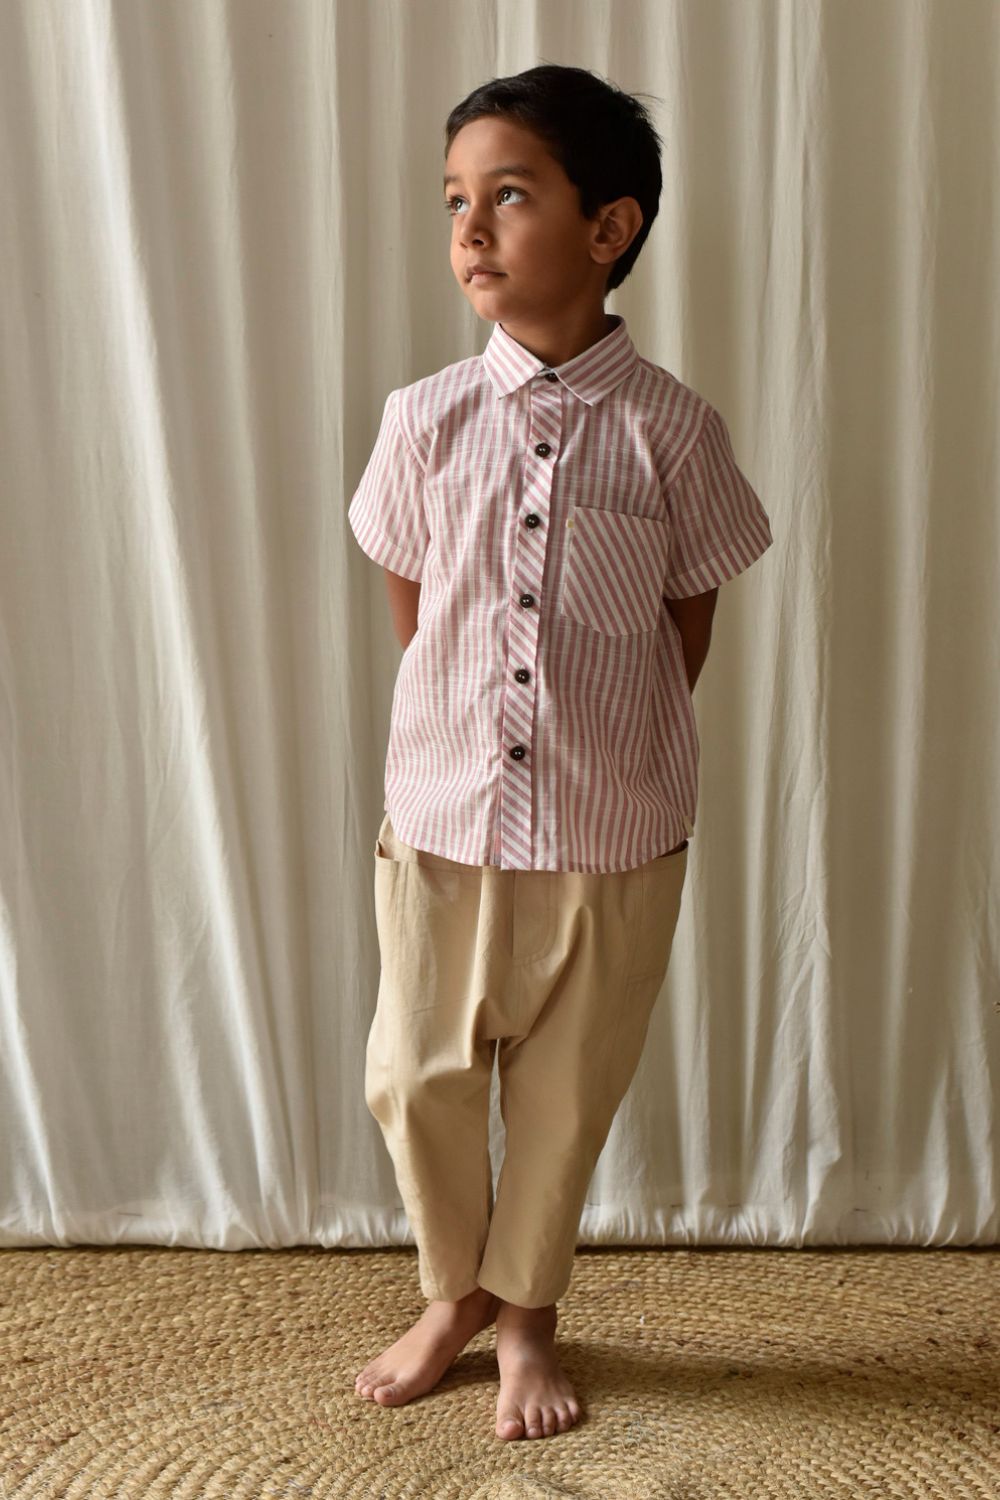 Candy Stripe Shirt Fashion Khara Kapas Kids 